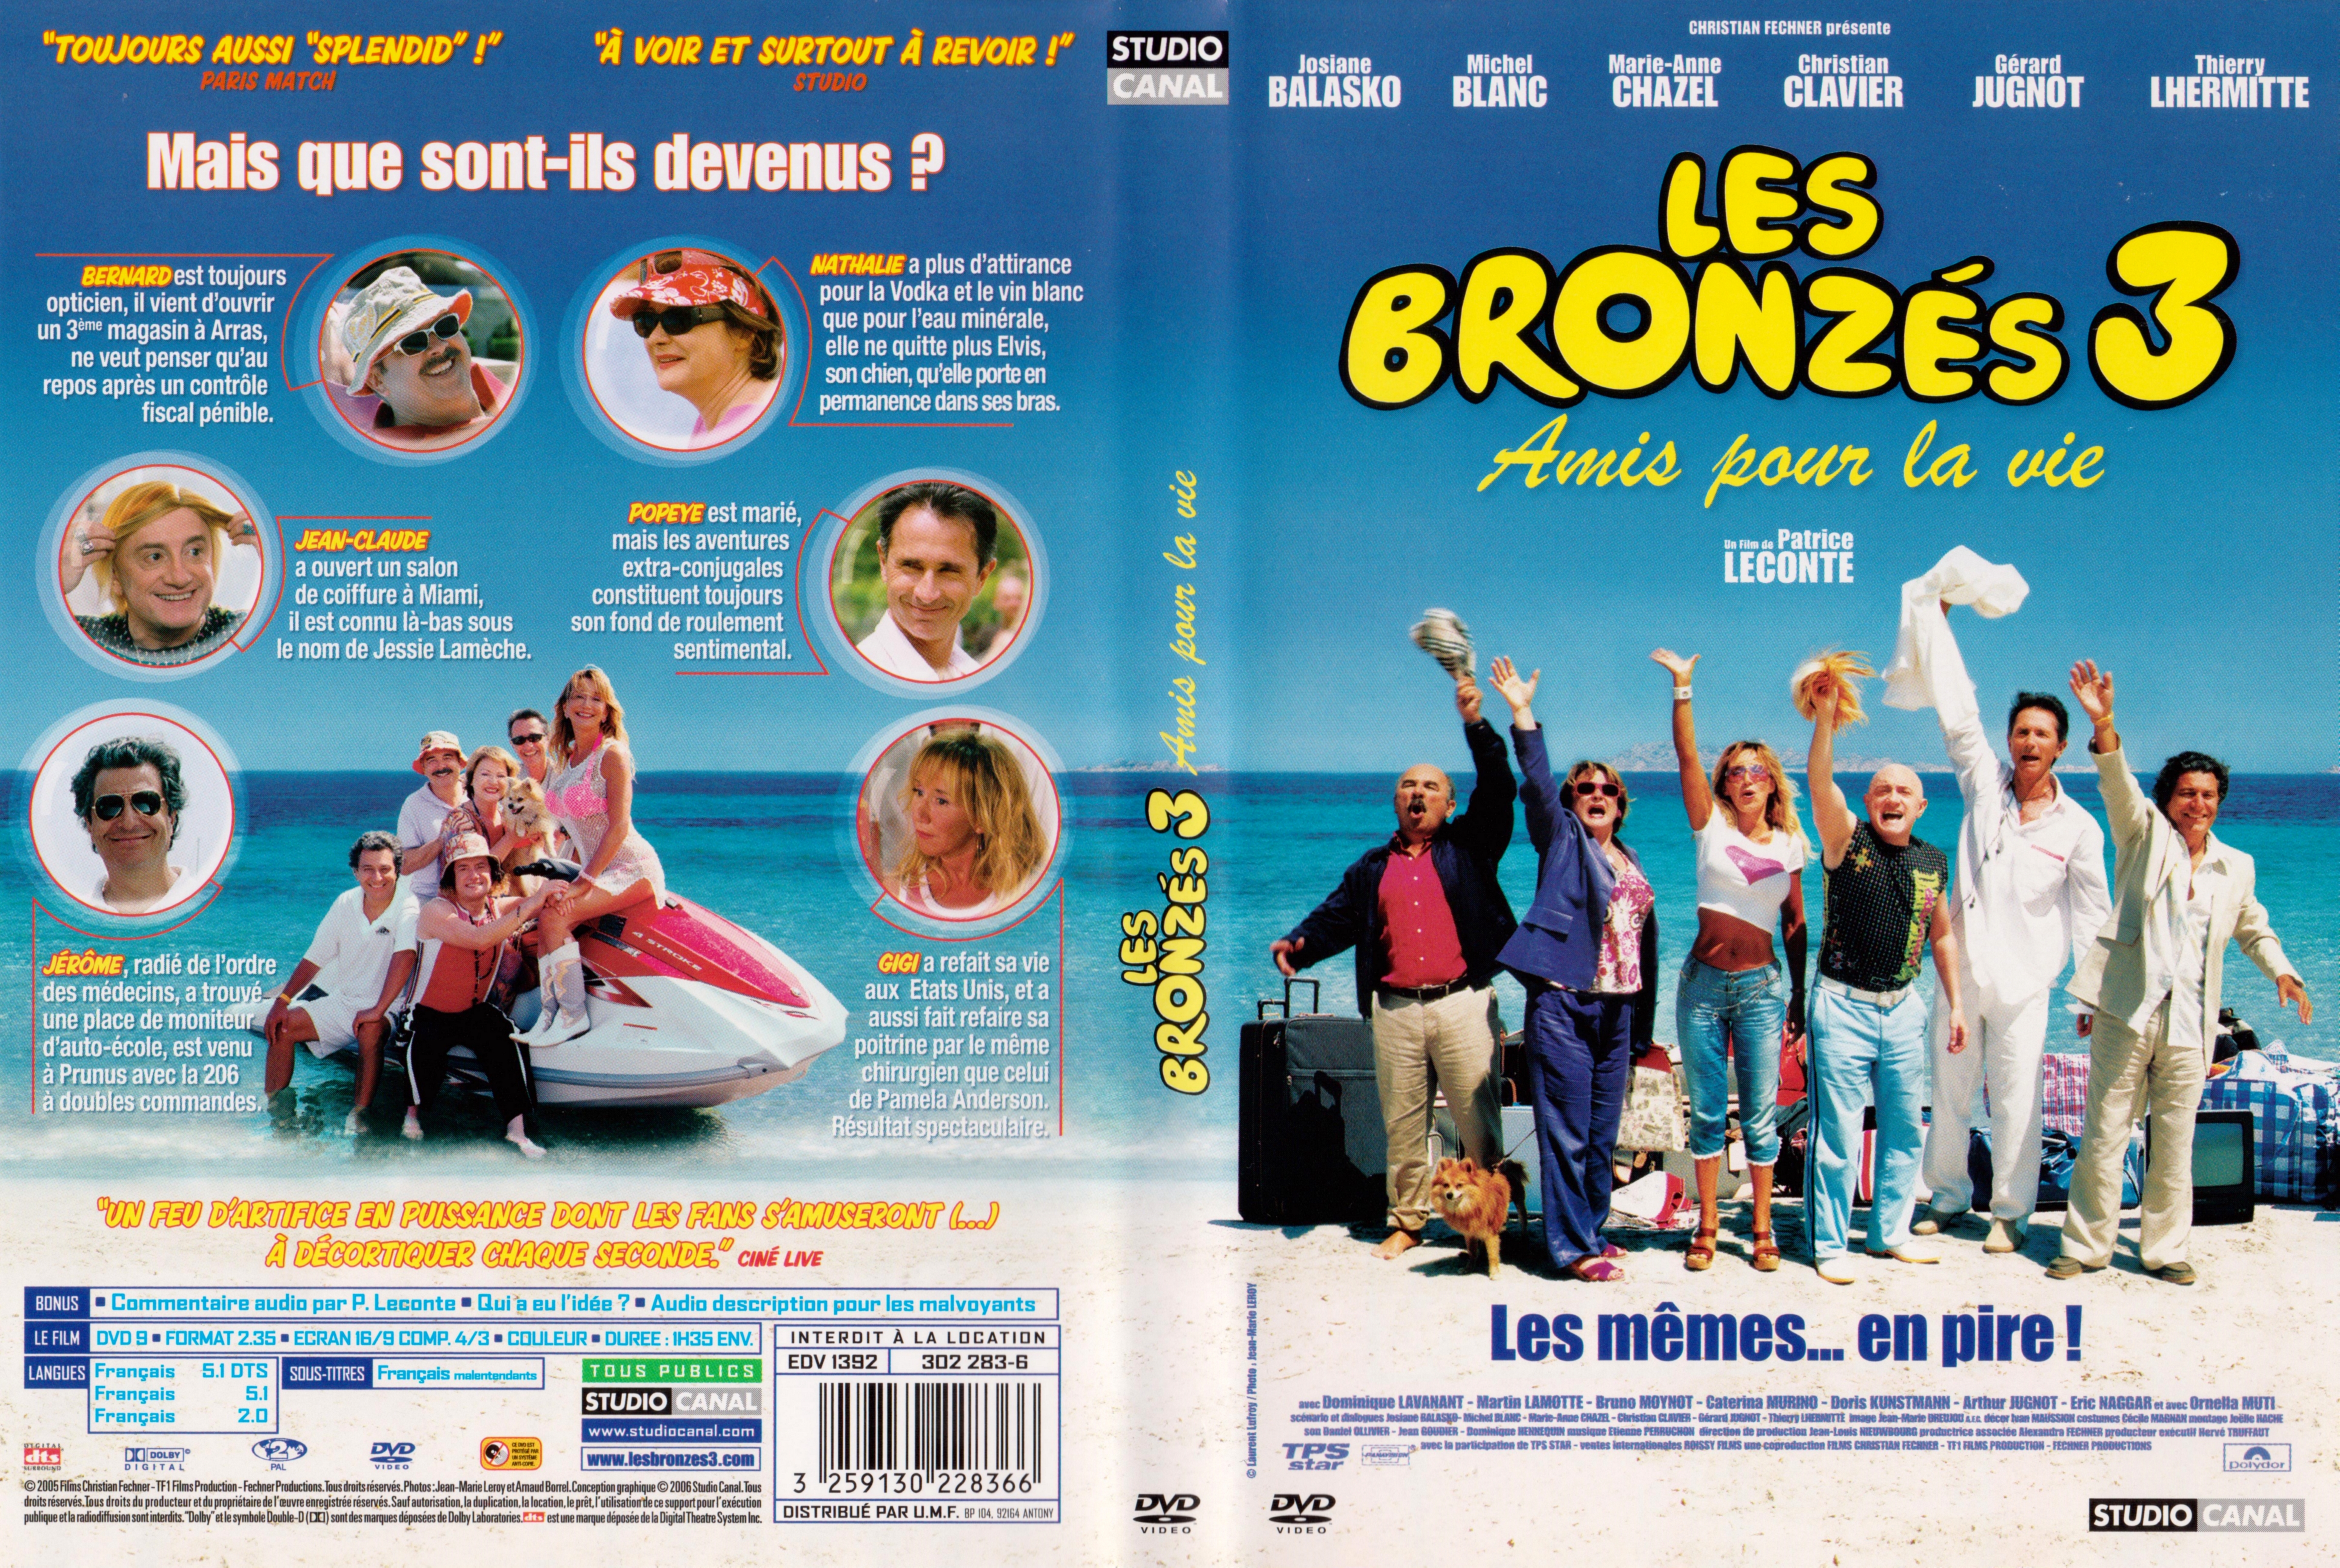 Jaquette DVD Les bronzs 3 v2